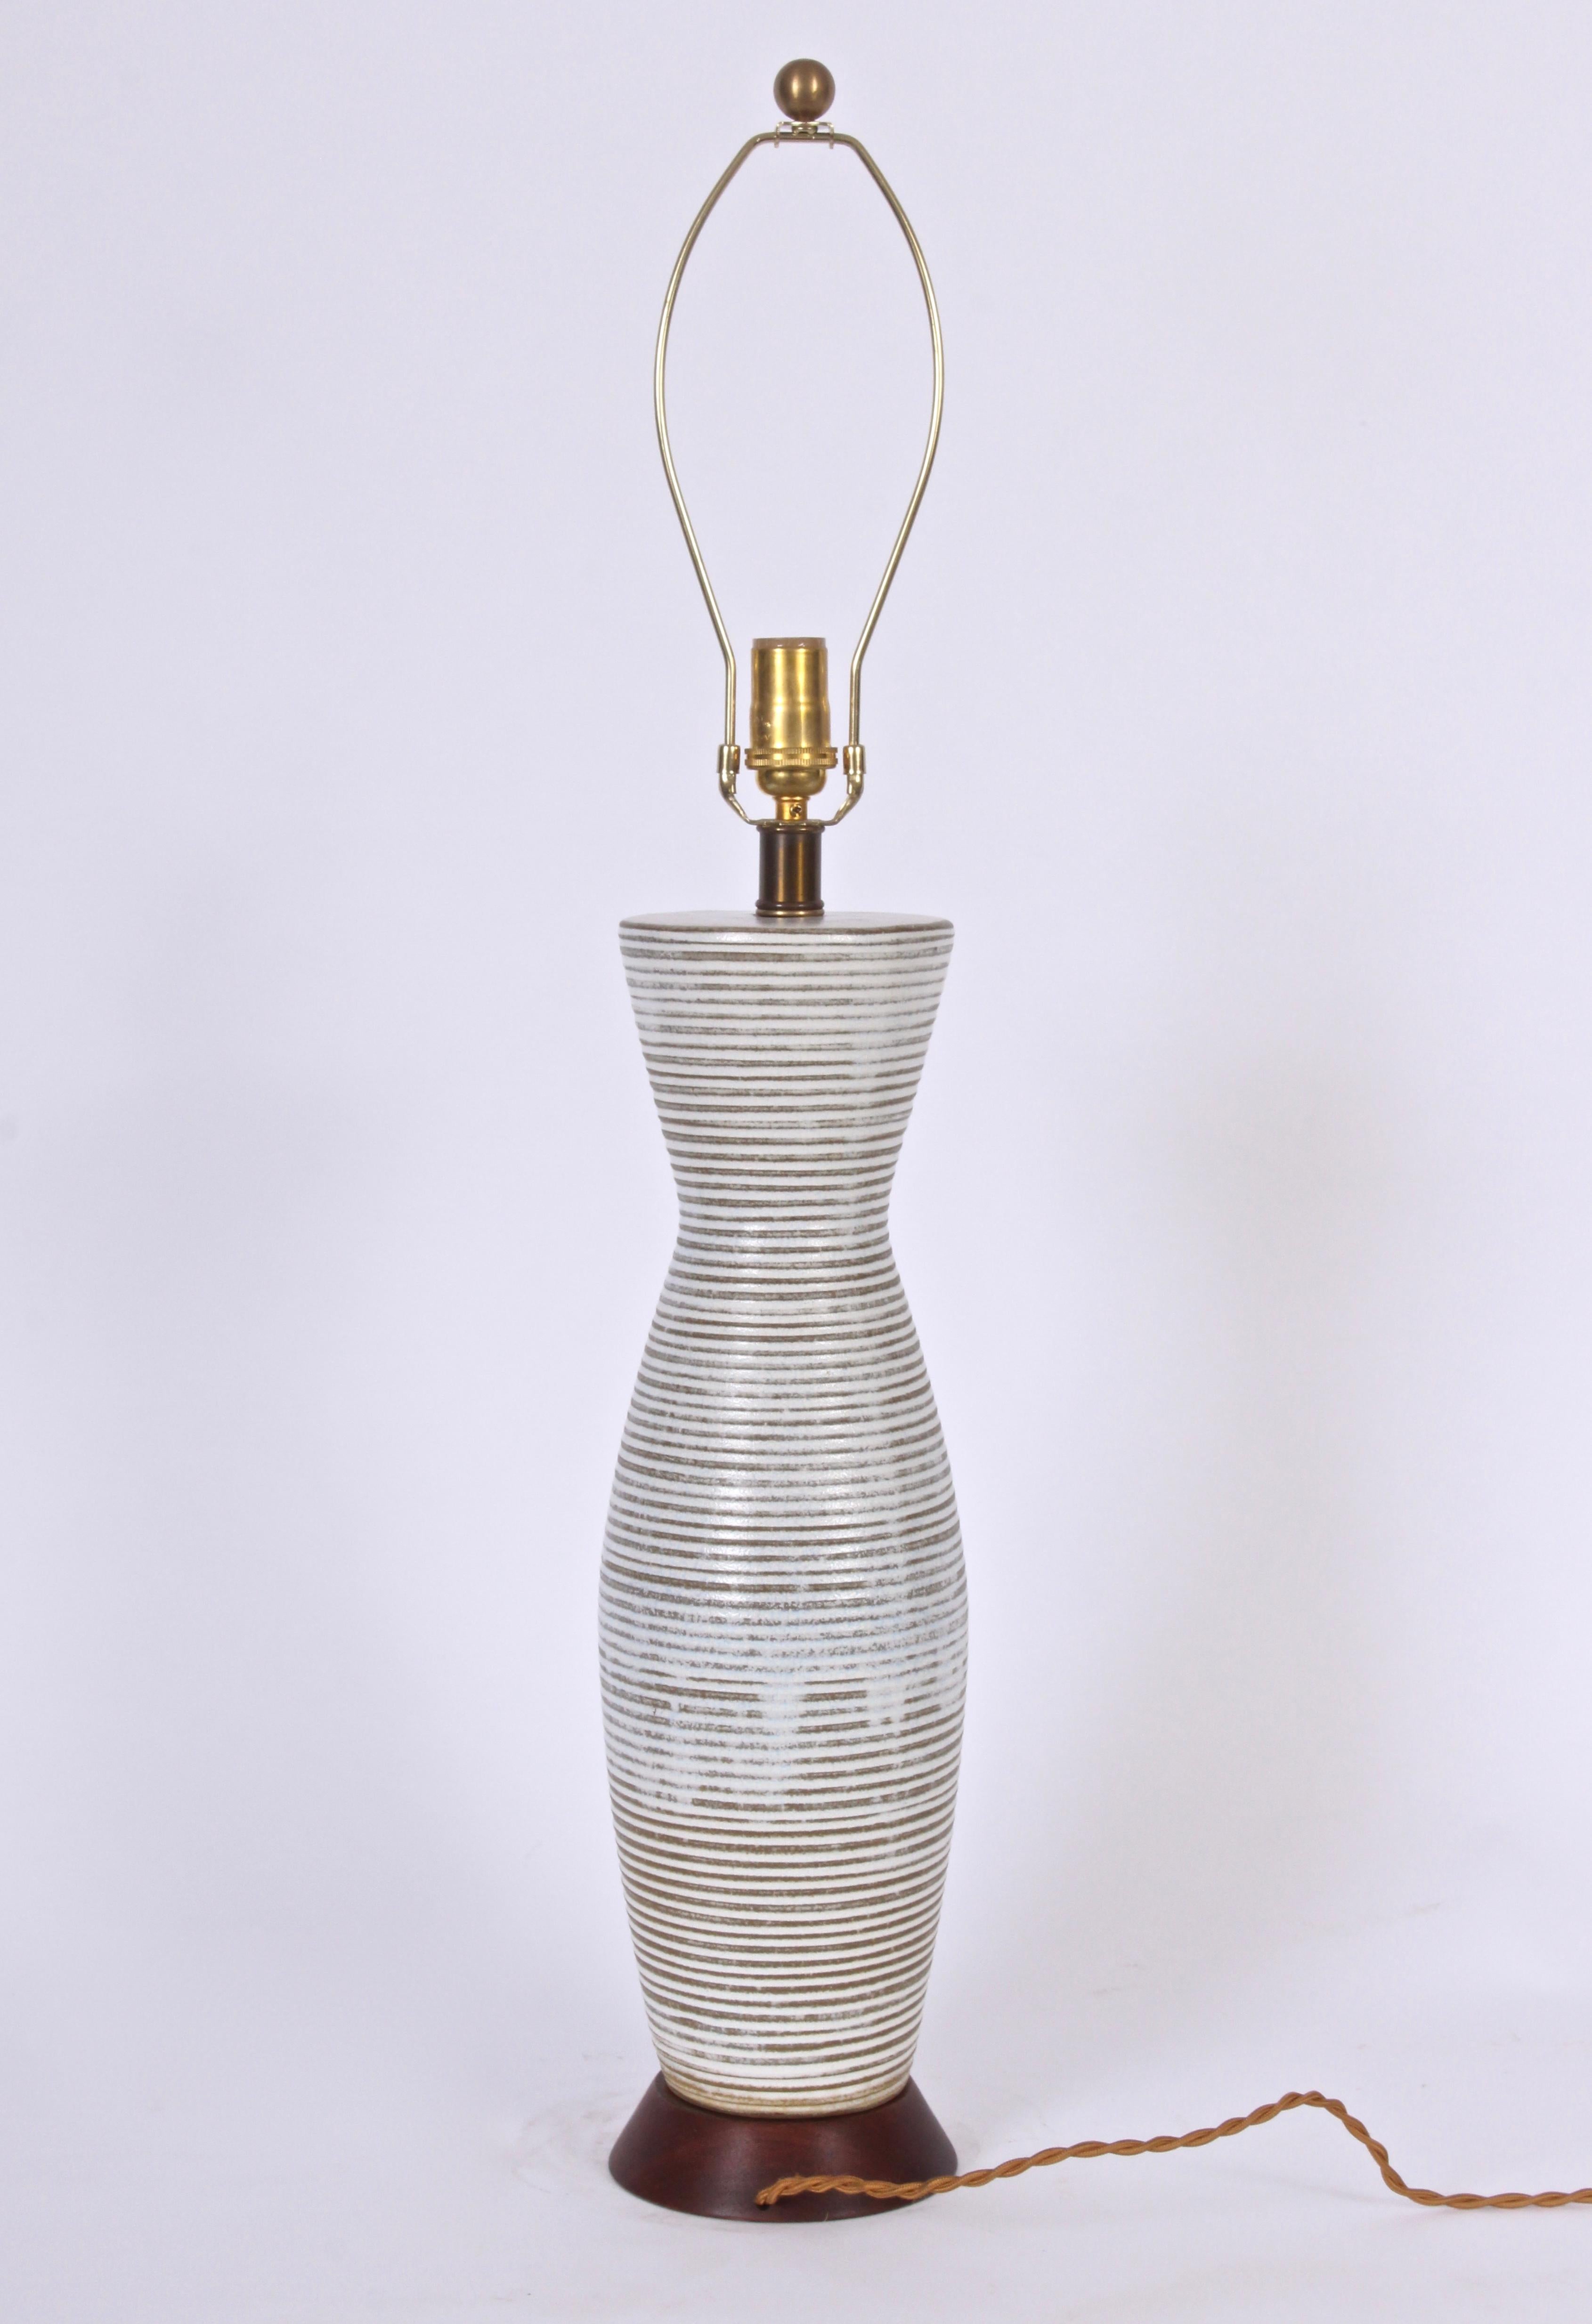 Substanzielle Lee Rosen für Design Technics weiß und taupe gebändert Keramik Tischlampe, 1950's.Ausgestattet mit einem Korsett Flasche Form mit handgefertigten horizontalen Bändern in weiß und hellbraun, grau getönten Färbung. Glasierte